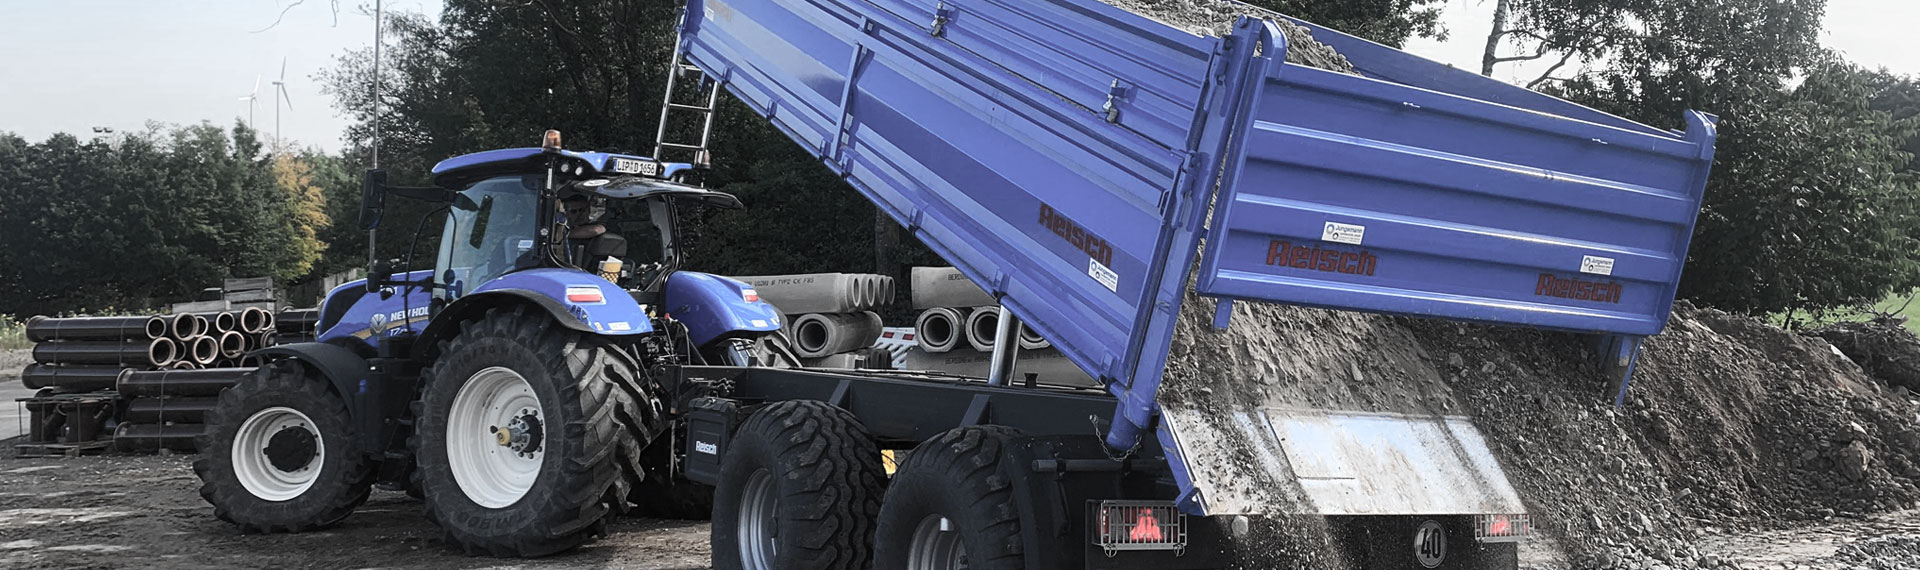 Một chiếc xe ben có thùng xe được chế tạo bằng thép lá Hardox®, đang trút đất đá.